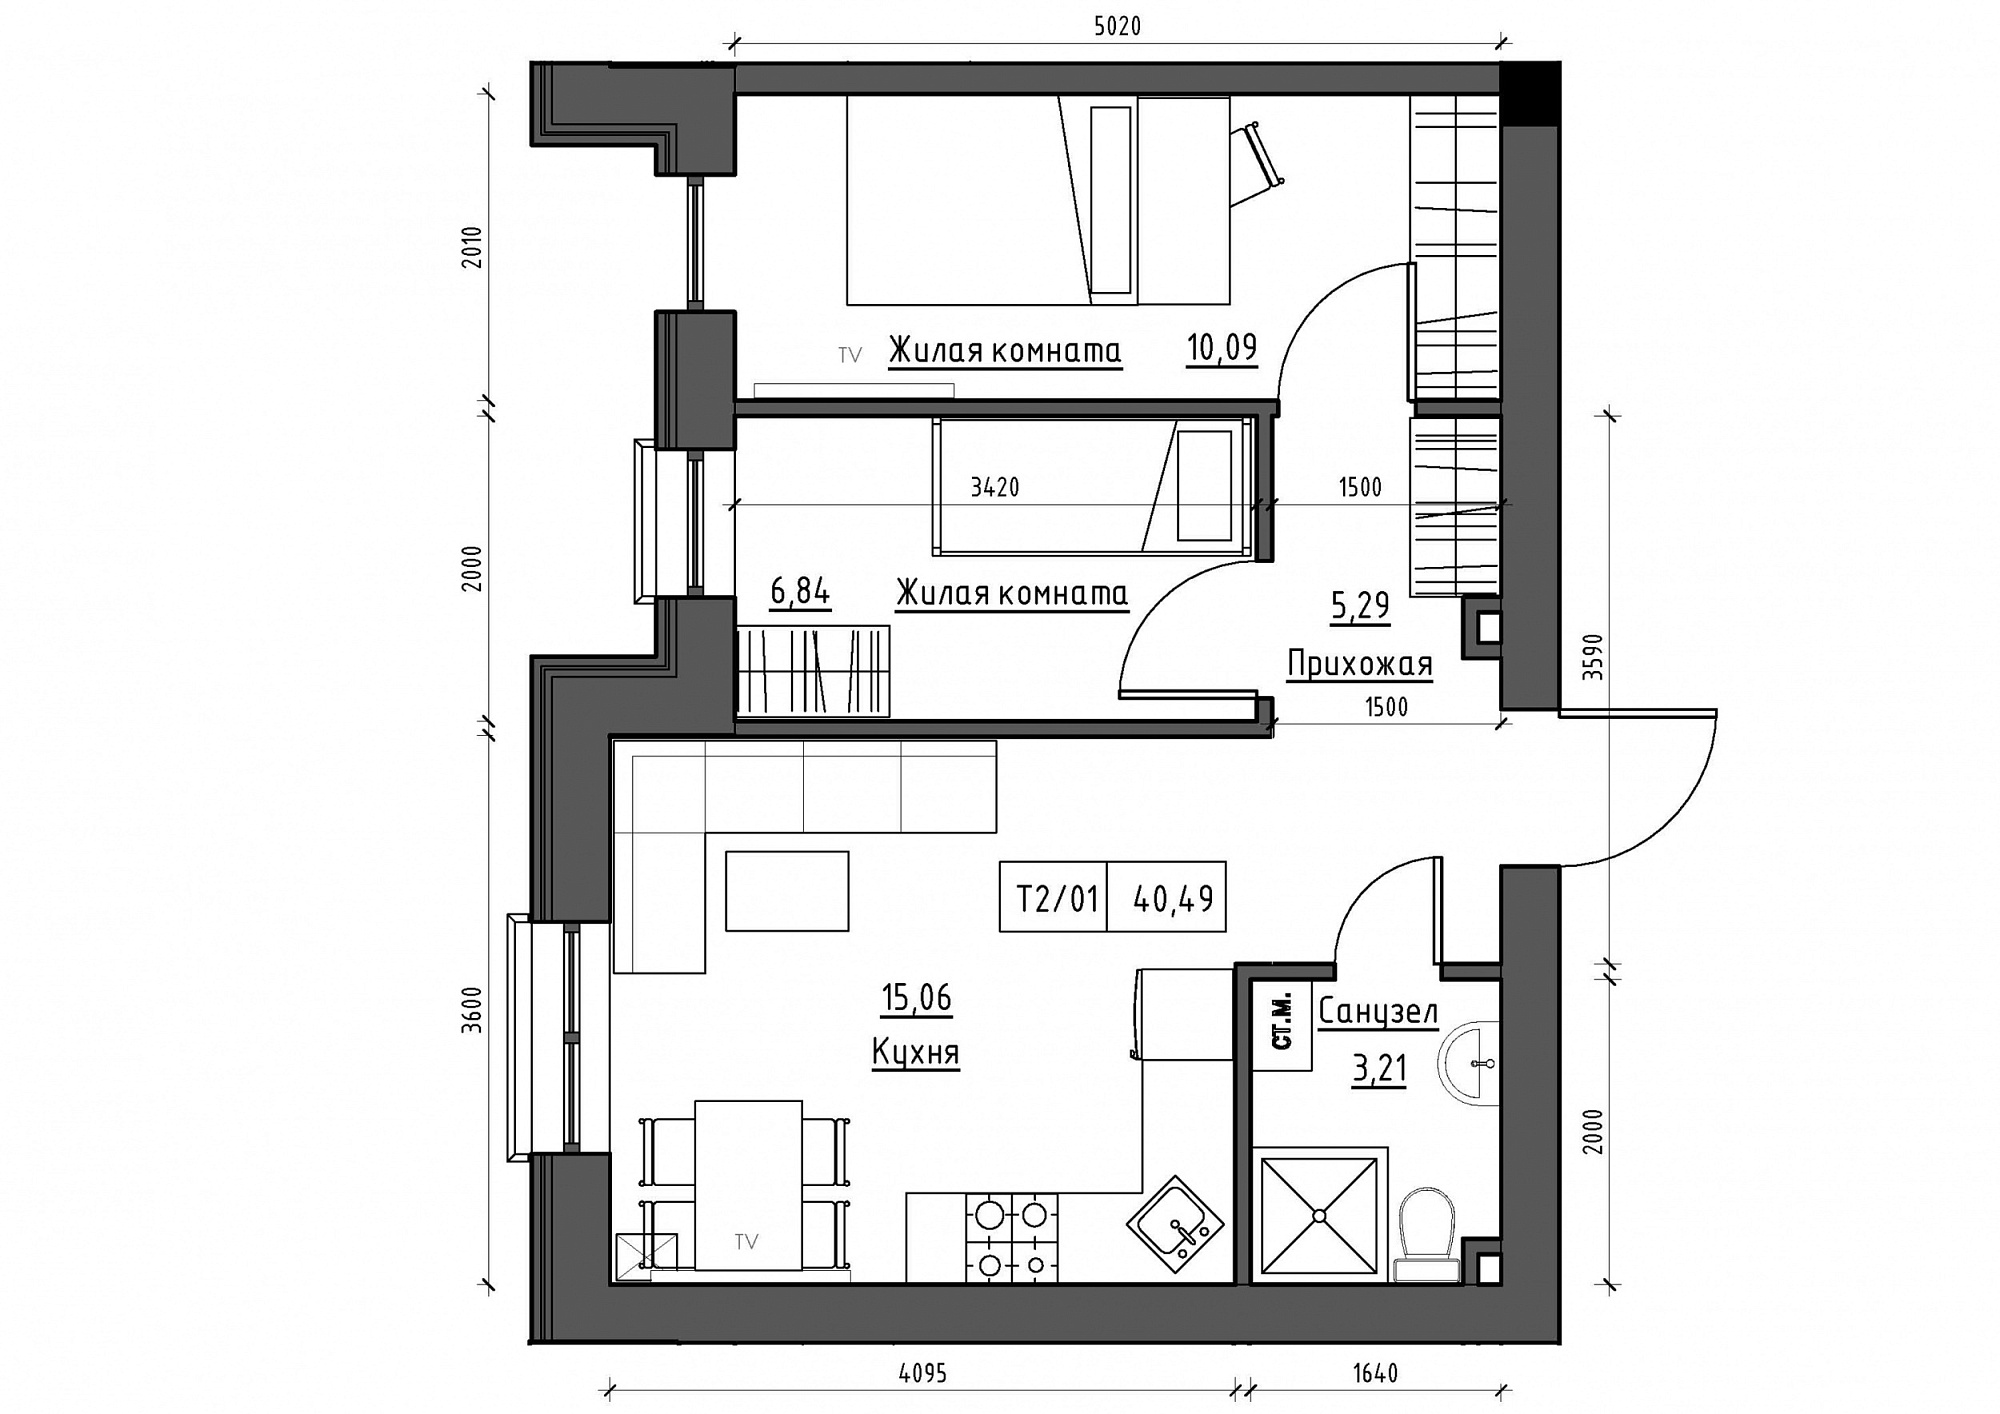 Планировка 2-к квартира площей 40.49м2, KS-012-01/0010.